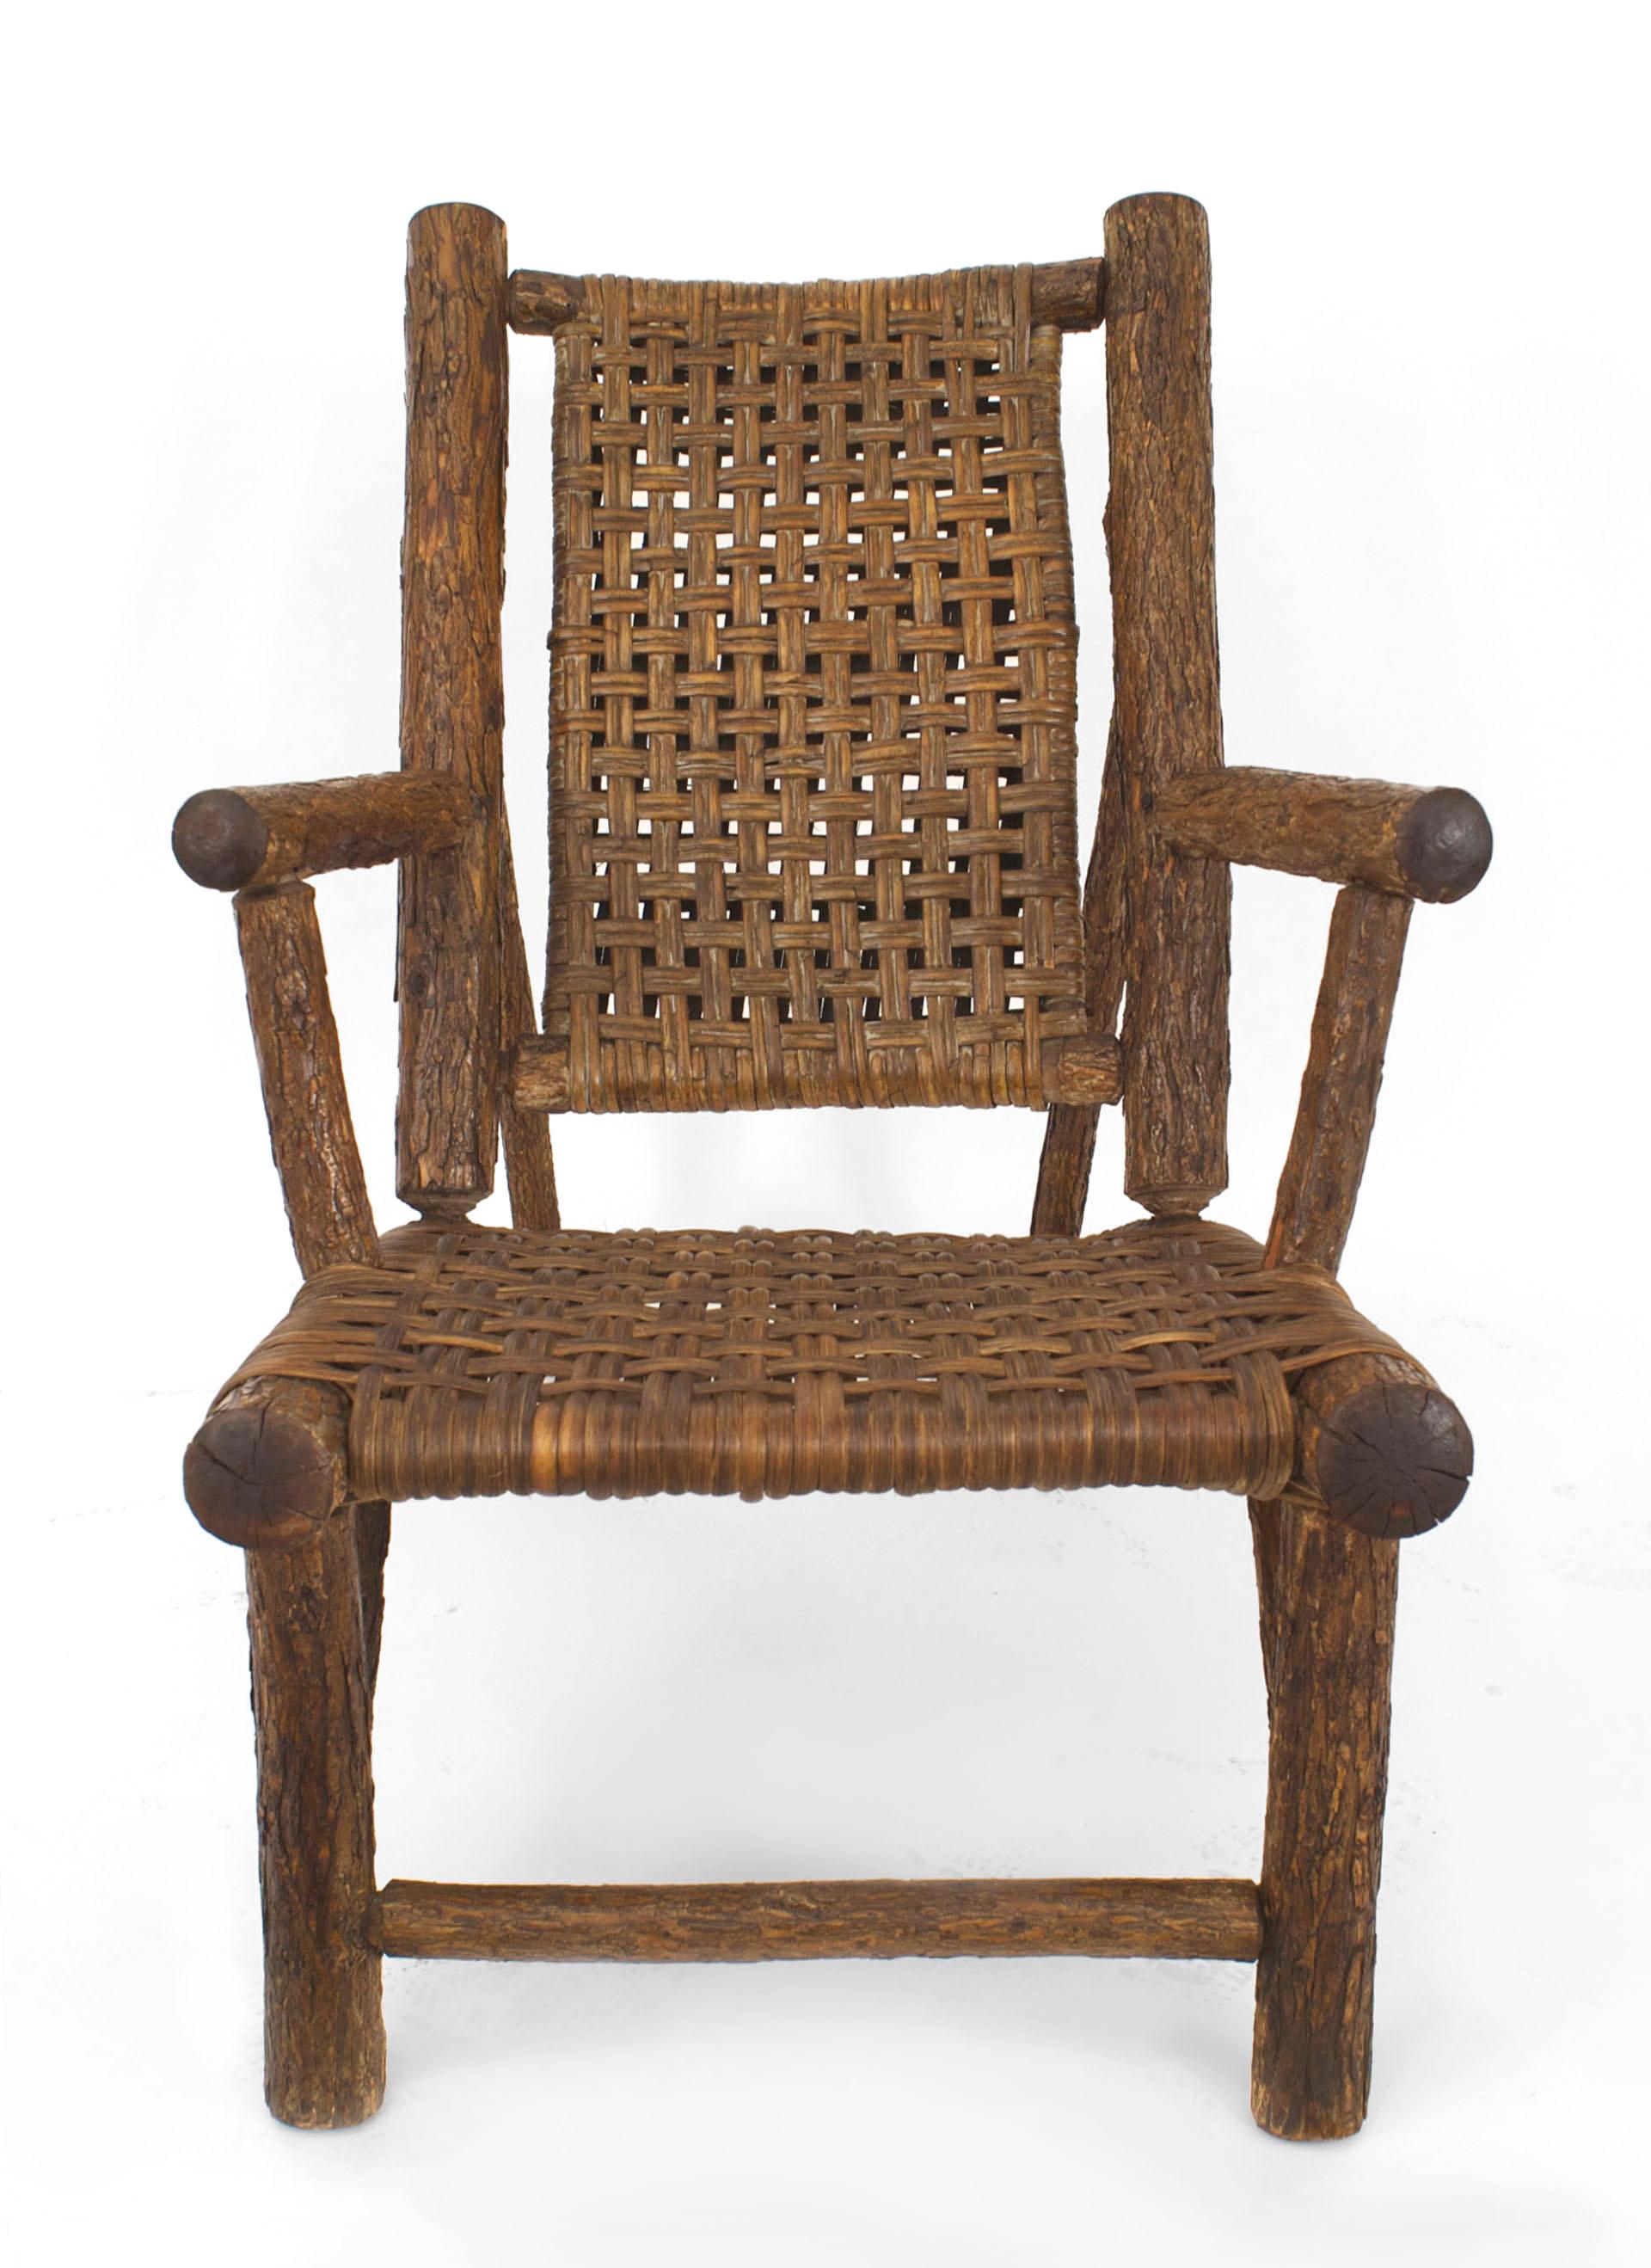 Paire de fauteuils rustiques américains de style Old Hickory (années 1930) à assise basse, avec une structure en bois de hickory, un siège et un dossier tissés et un seul tabouret assorti (21 